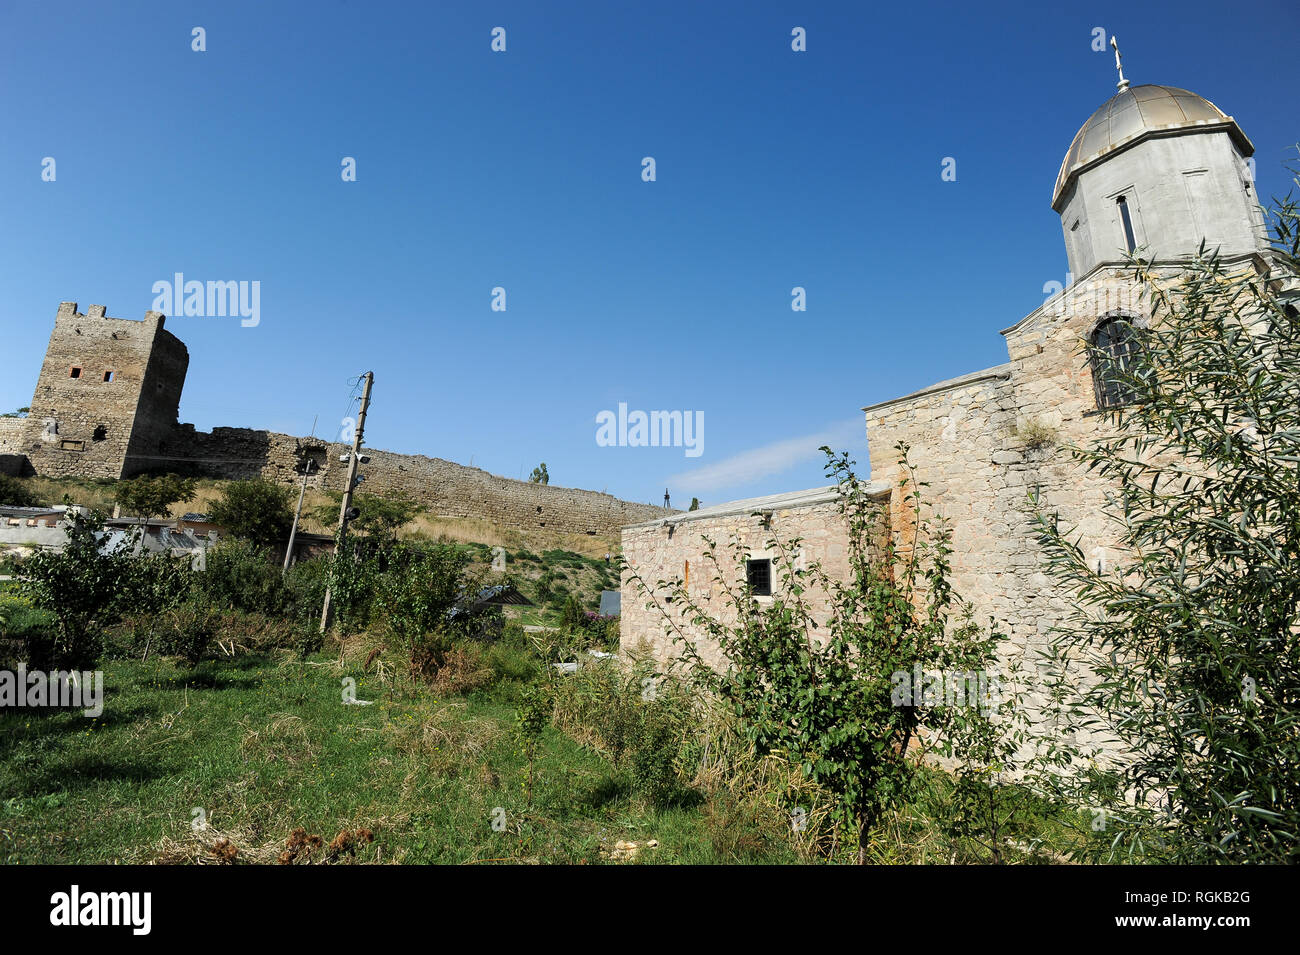 Castillo genovés Caffa desde el siglo XIV y la iglesia de la Iveron icono de la Madre de Dios (Ex San Juan Bautista iglesia armenia) construido en el XI Foto de stock